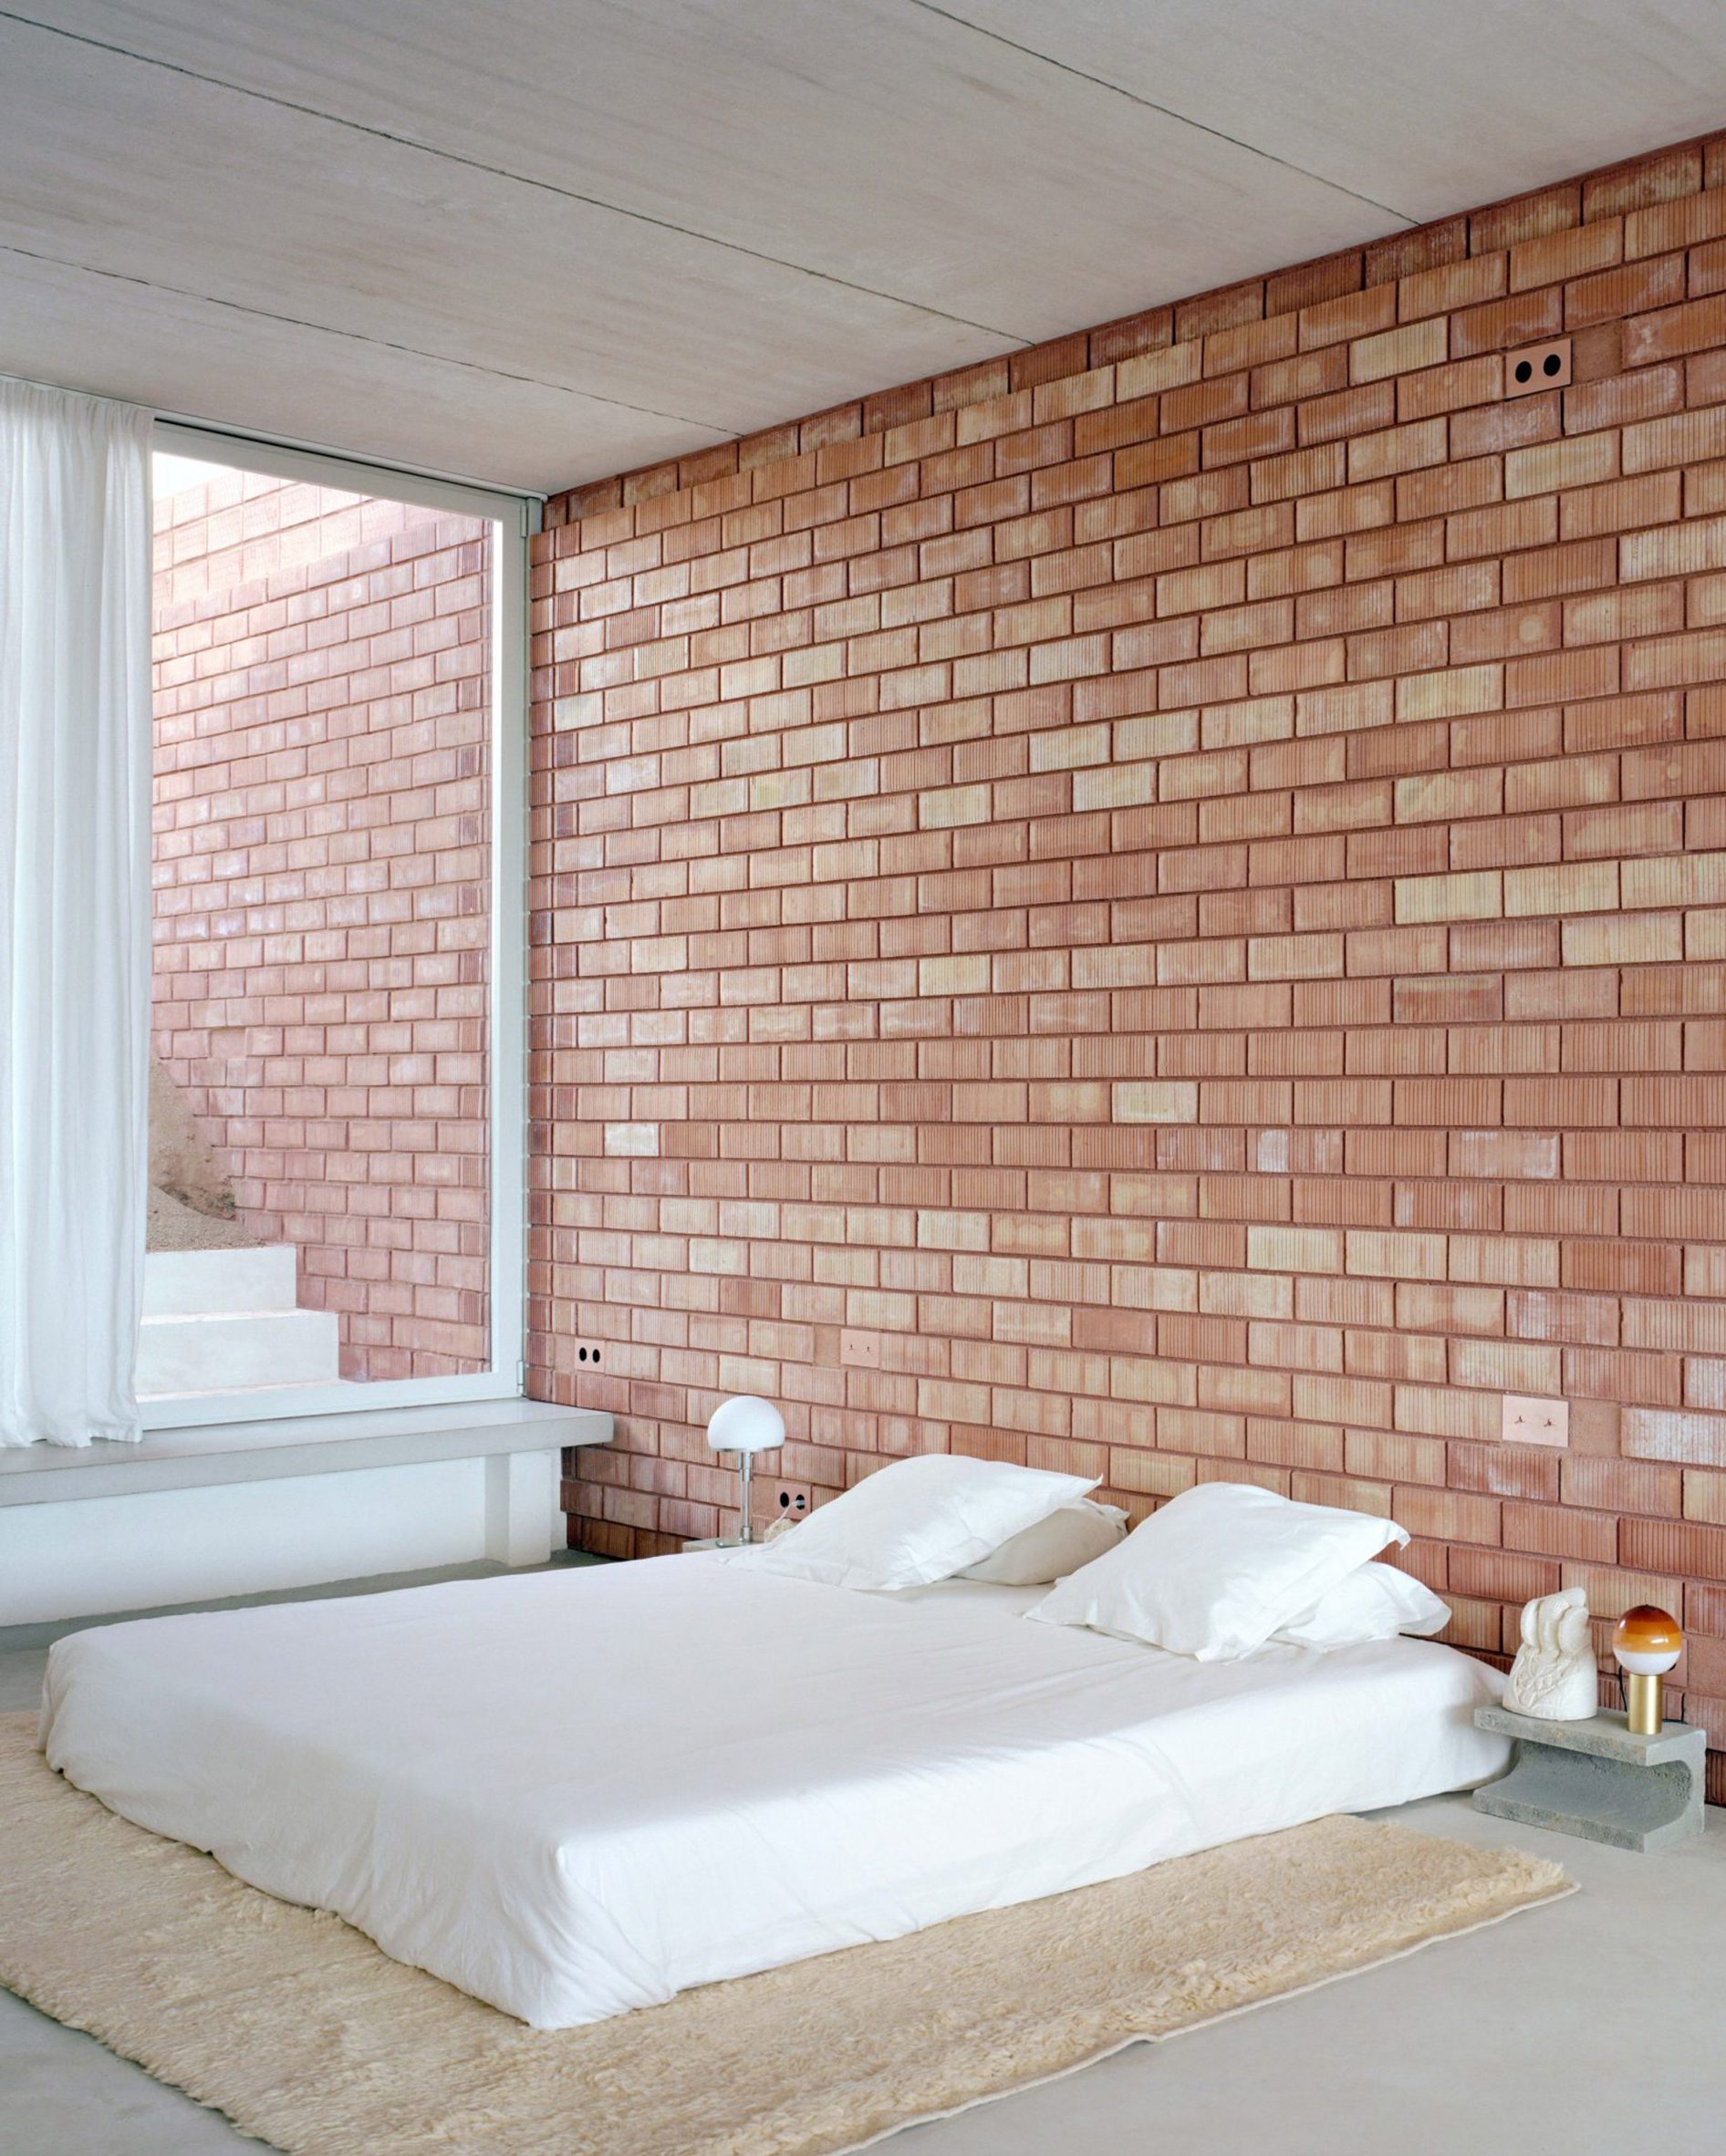 Bedroom with floor mattress and brick walls